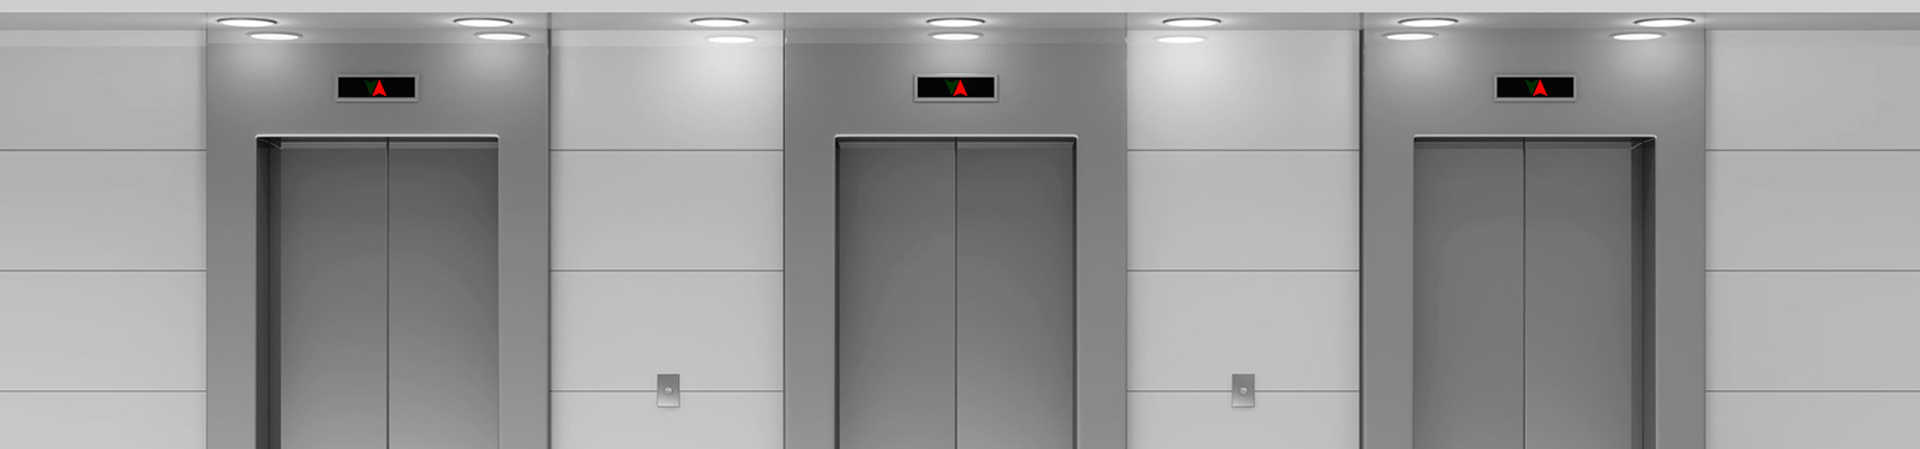 Instalar elevador